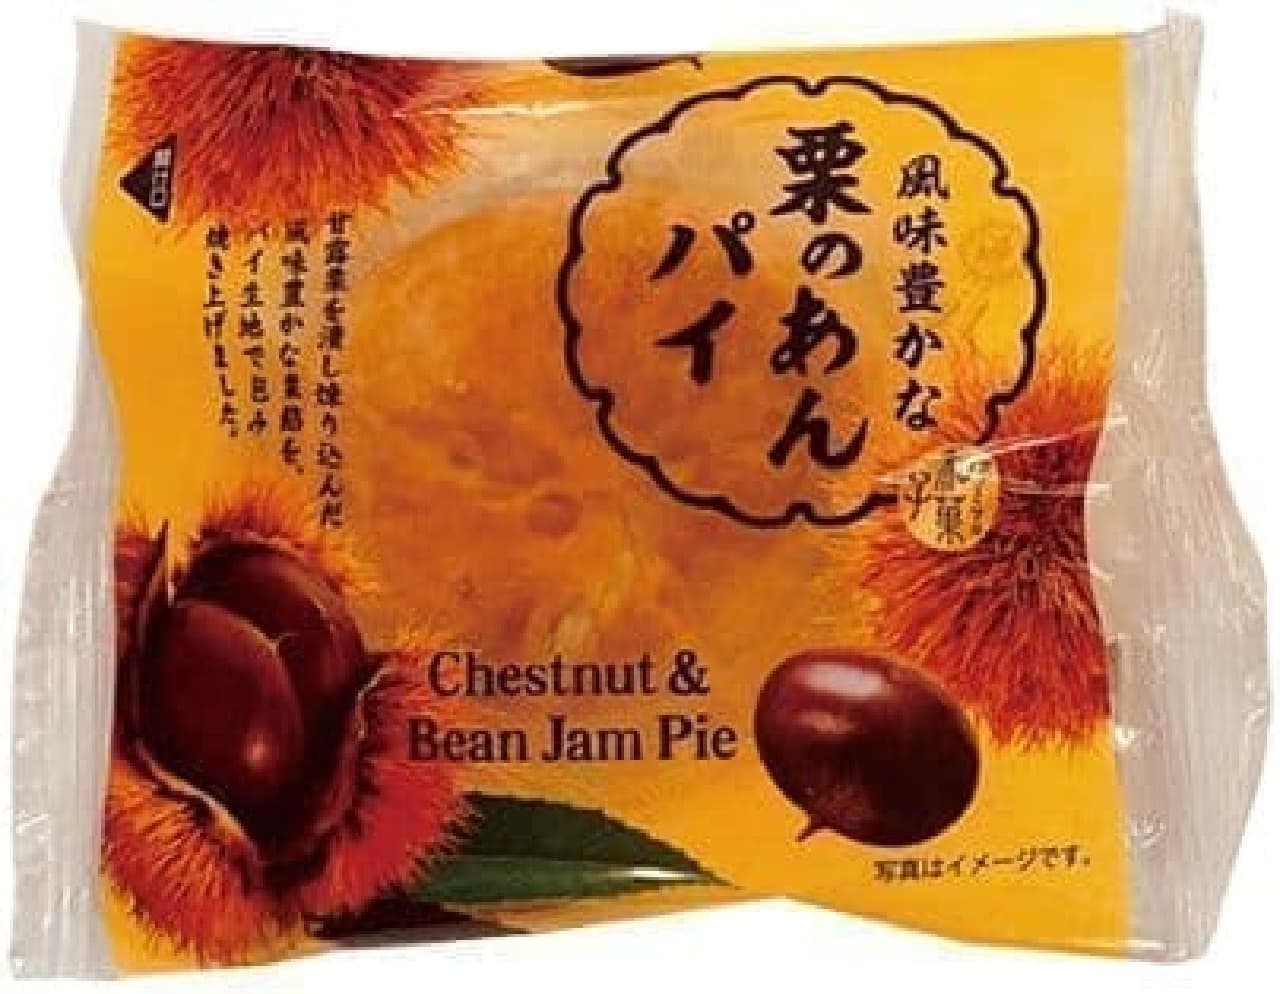 FamilyMart "Flavored chestnut bean paste"